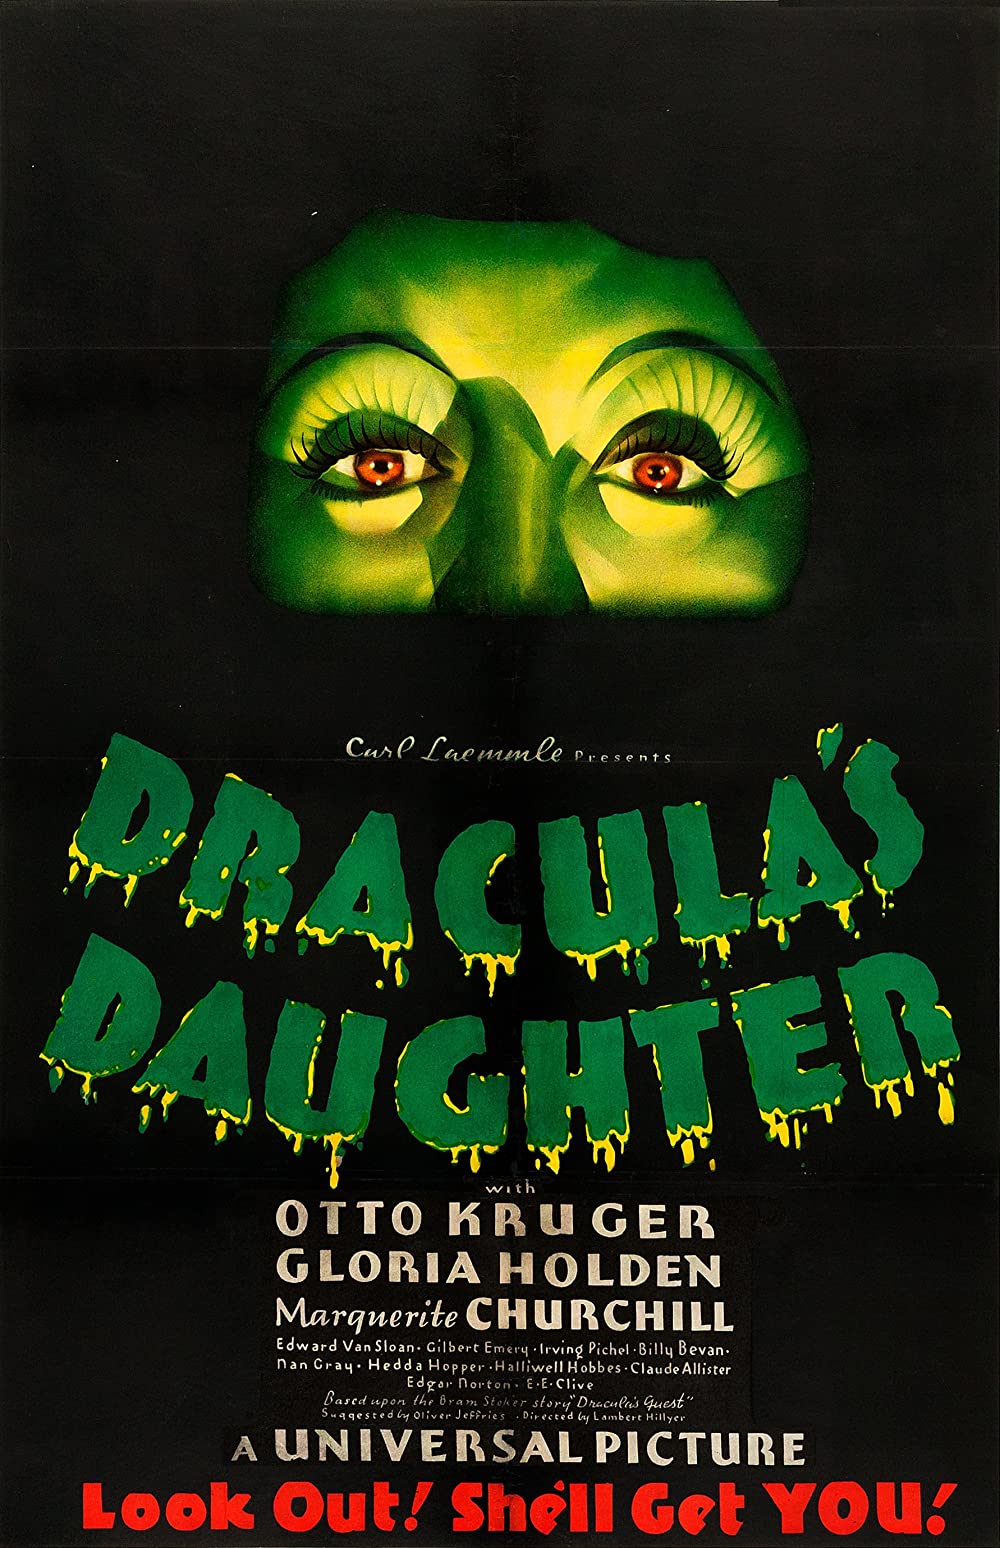 Filmbeschreibung zu Dracula's Daughter